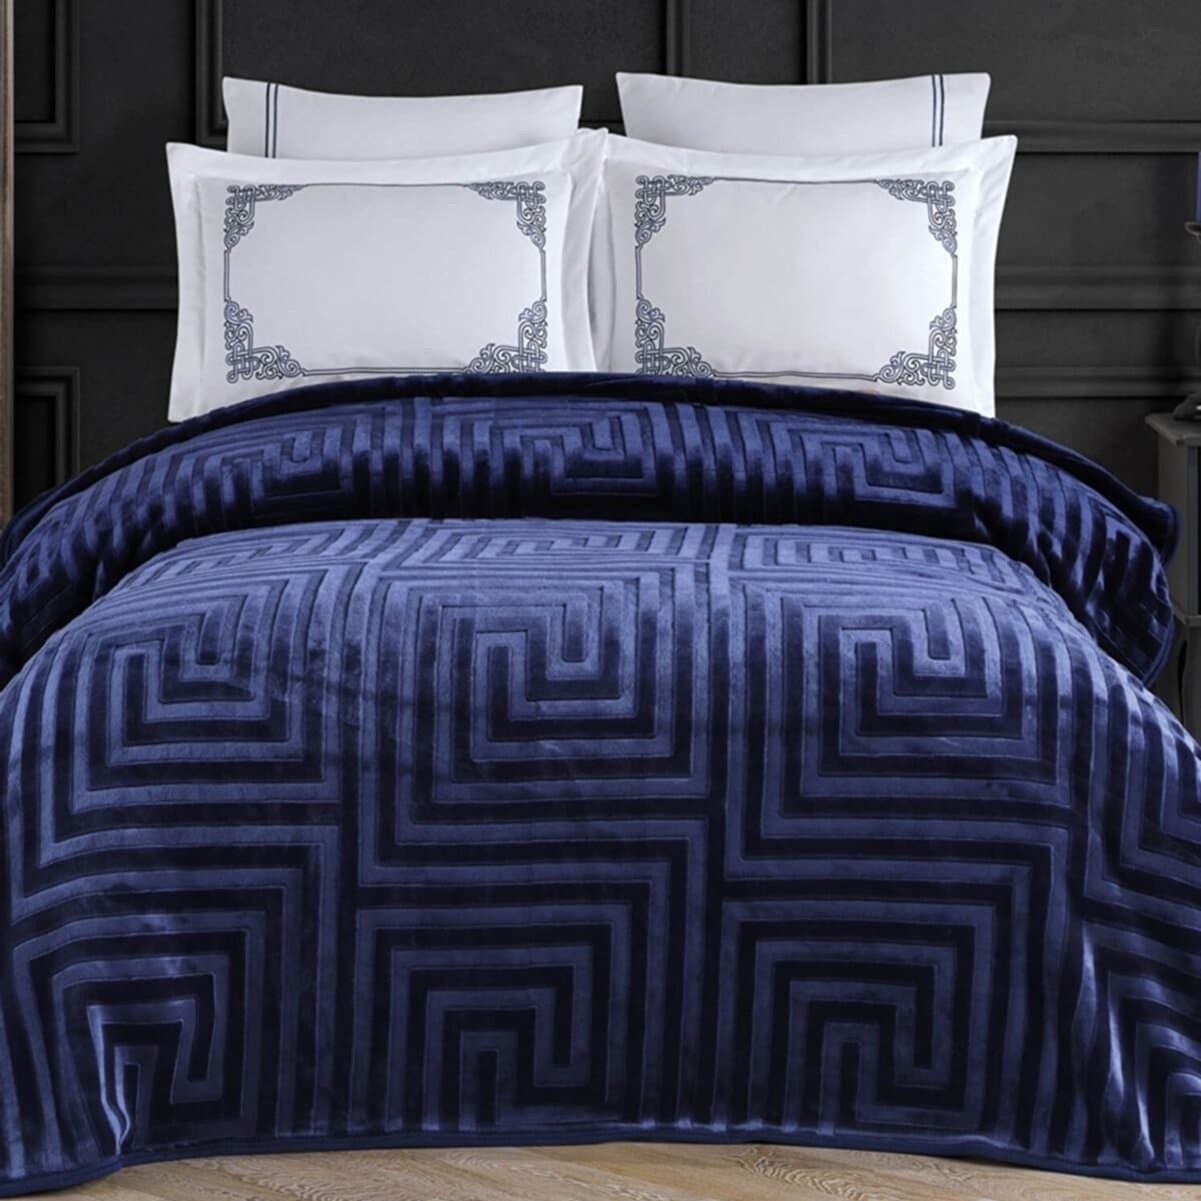 Постельное белье с одеялом-покрывалом Agossa embos цвет: темно-синий (king size (евро макси))